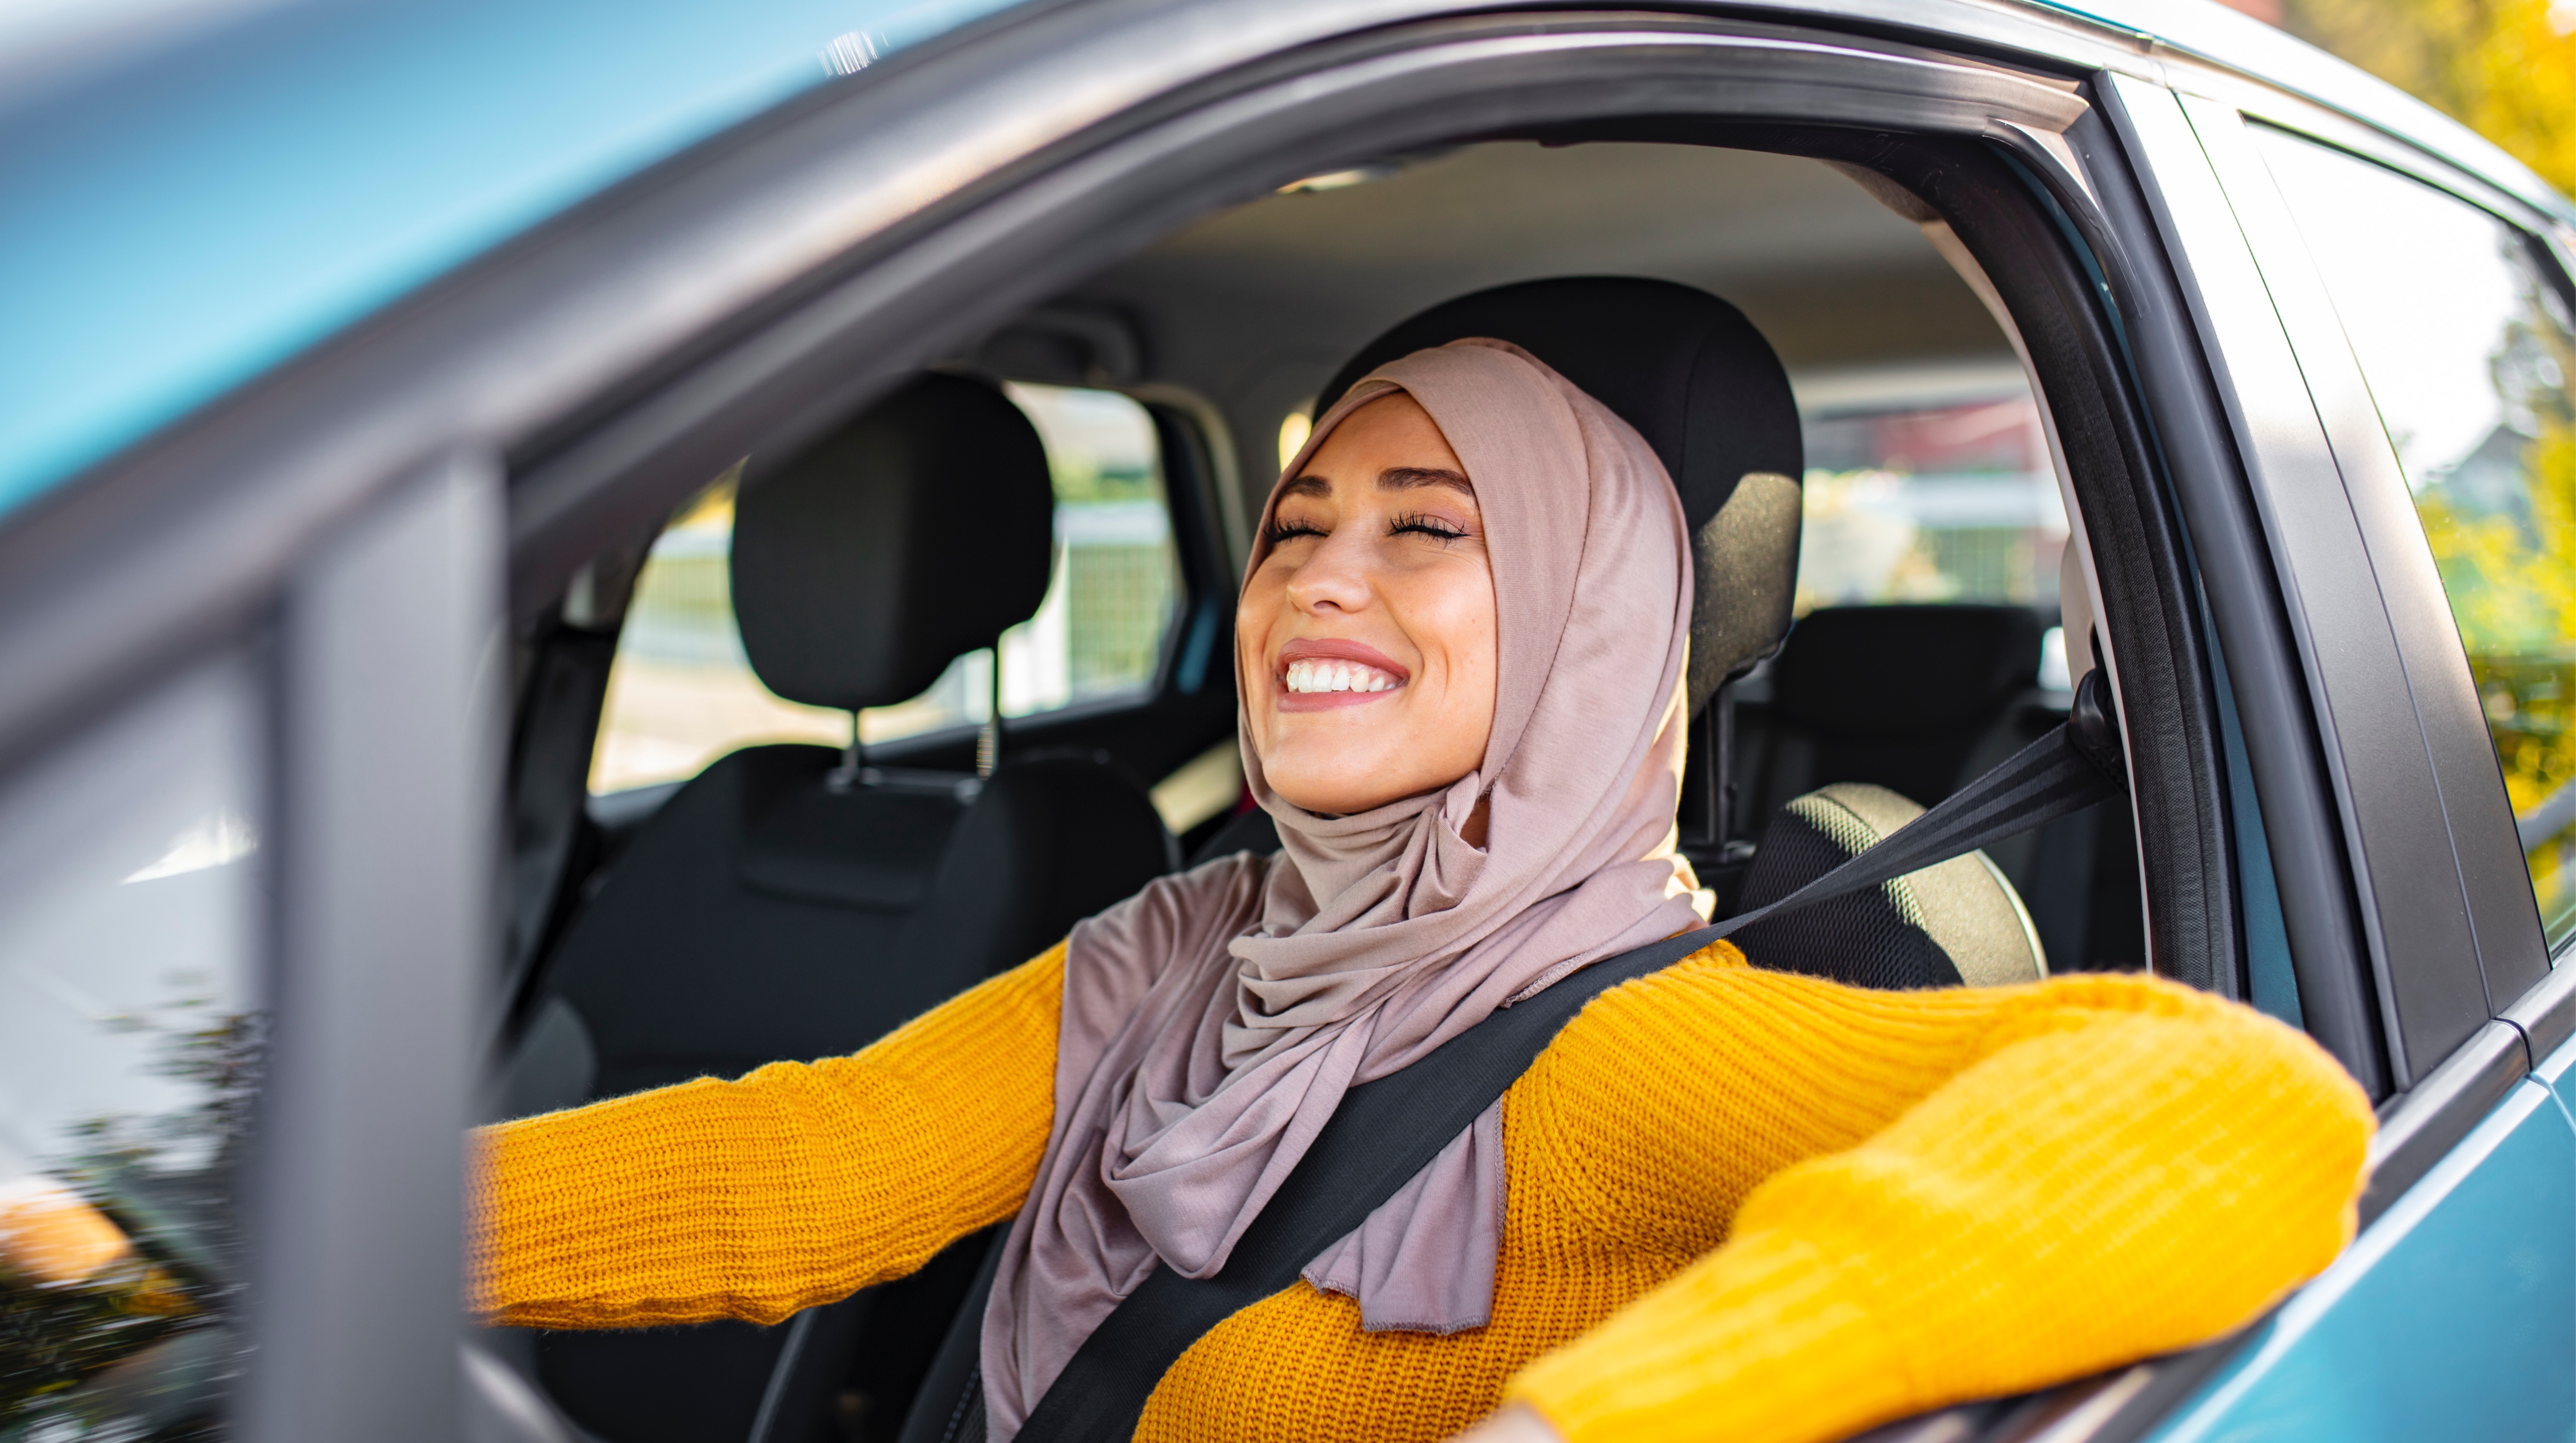 امرأة جميلة ترتدي الحجاب وتقوم بقيادة سيارتها في أنحاء إمارة أبوظبي